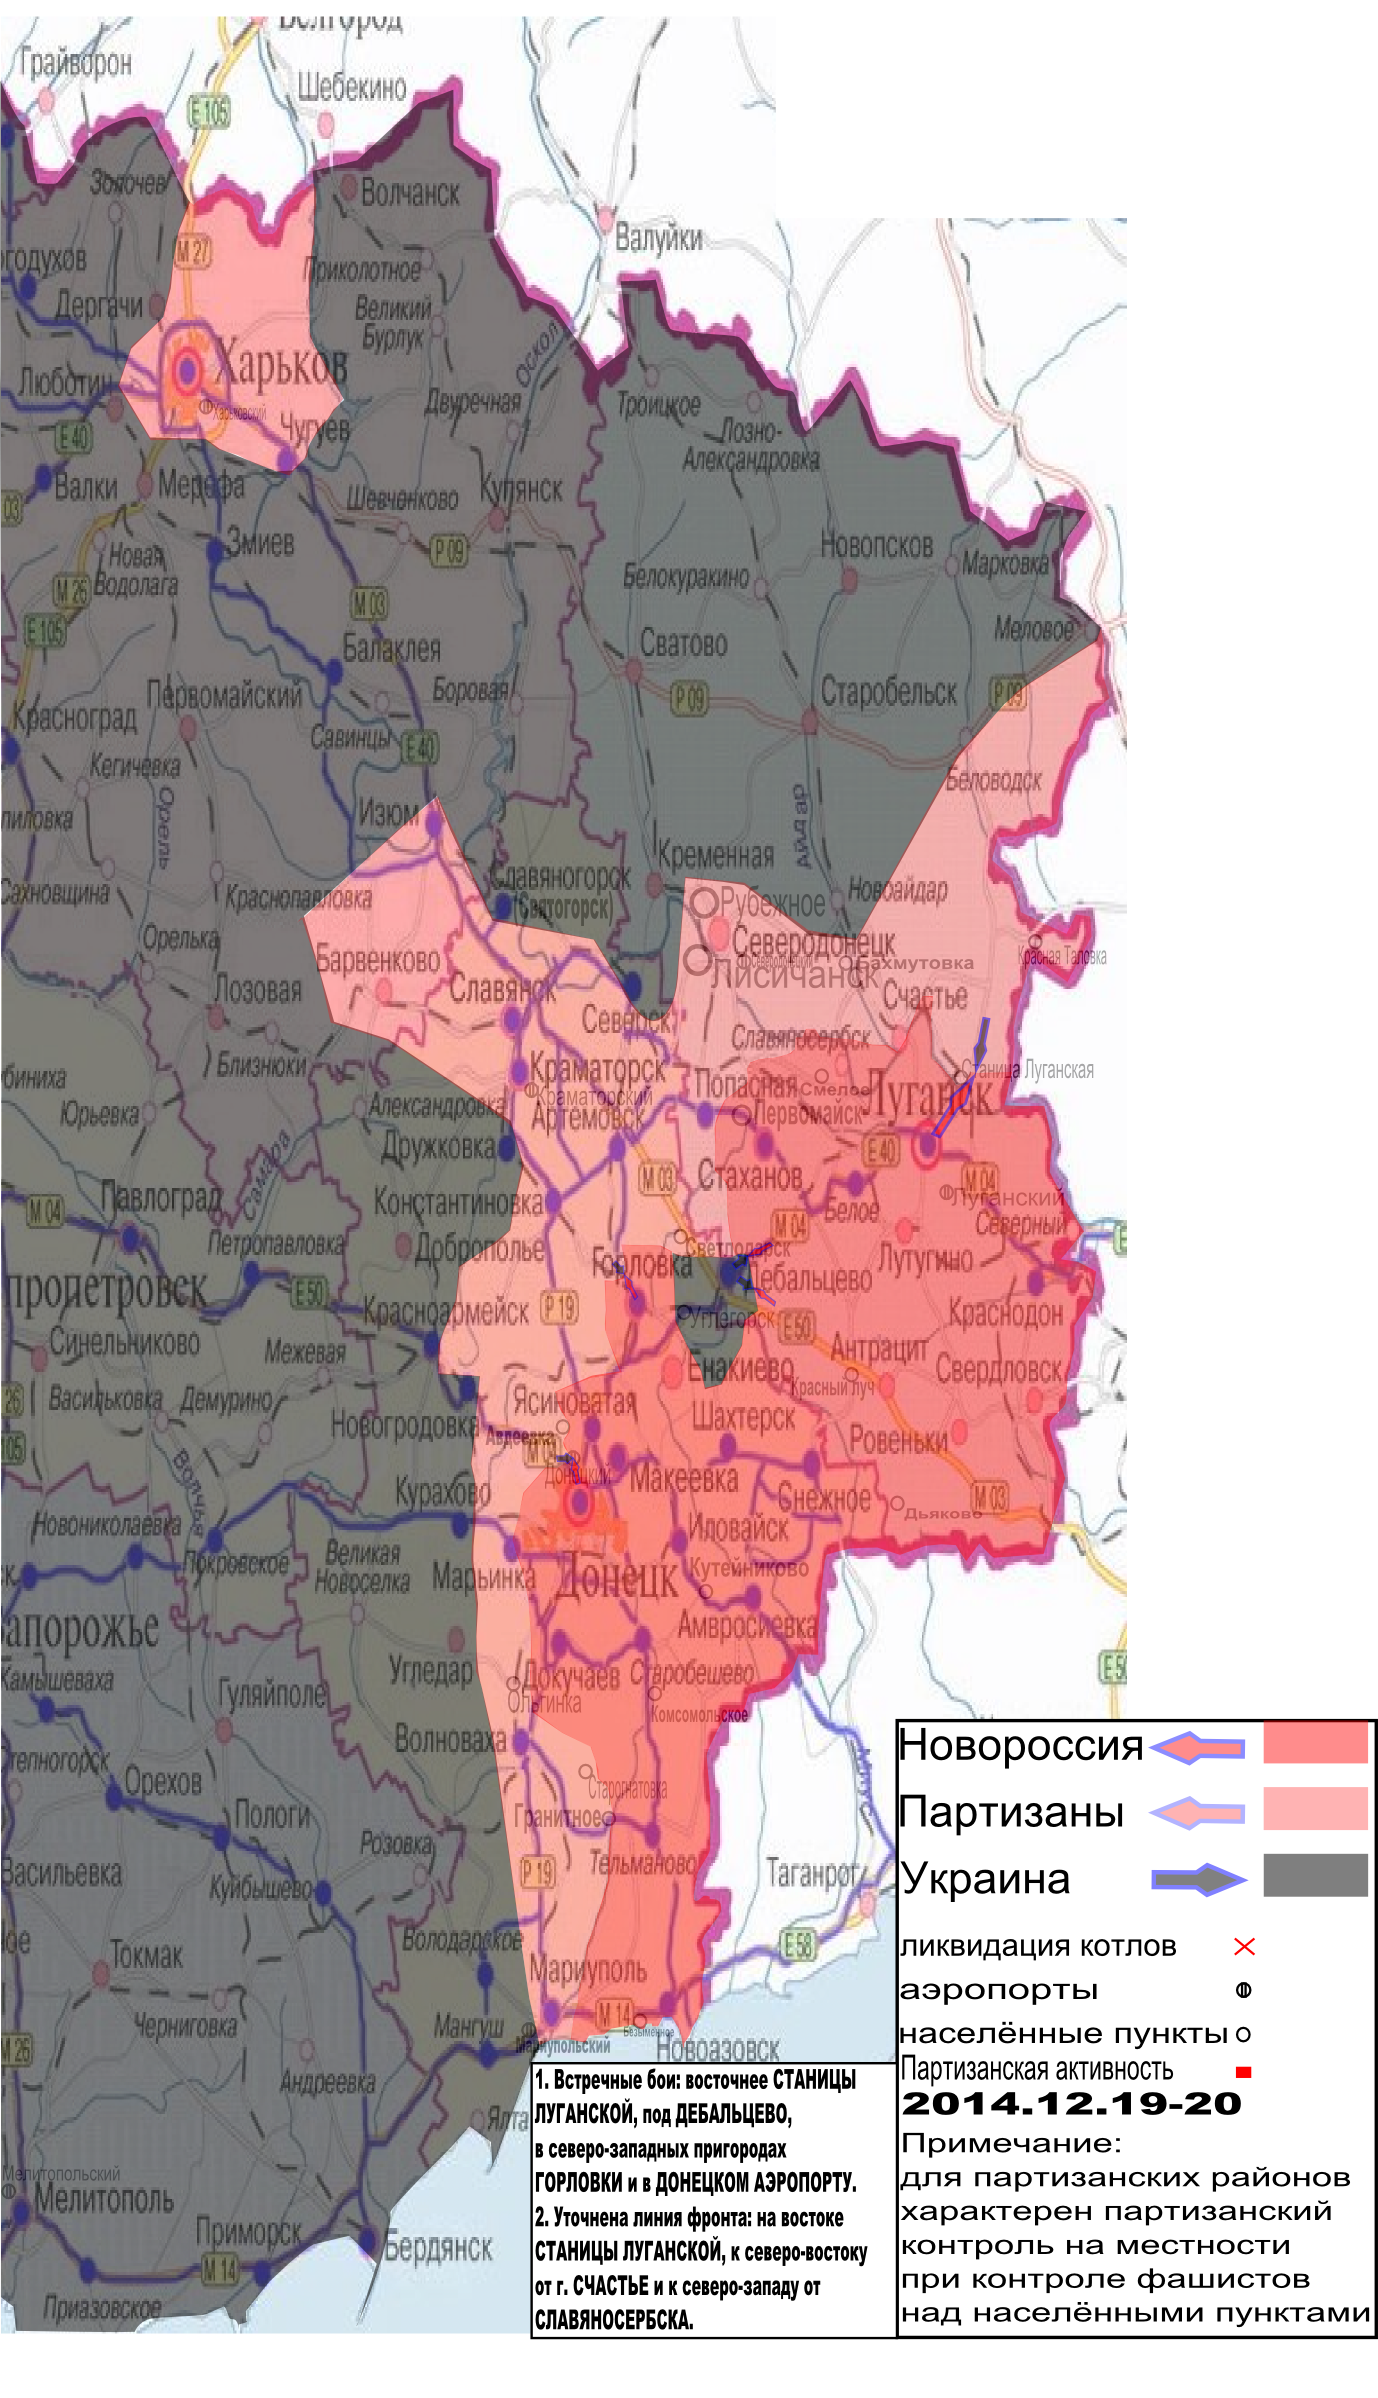 Карта боевых действий в Новороссии с обозначением зон партизанской активности 19-20 декабря 2014